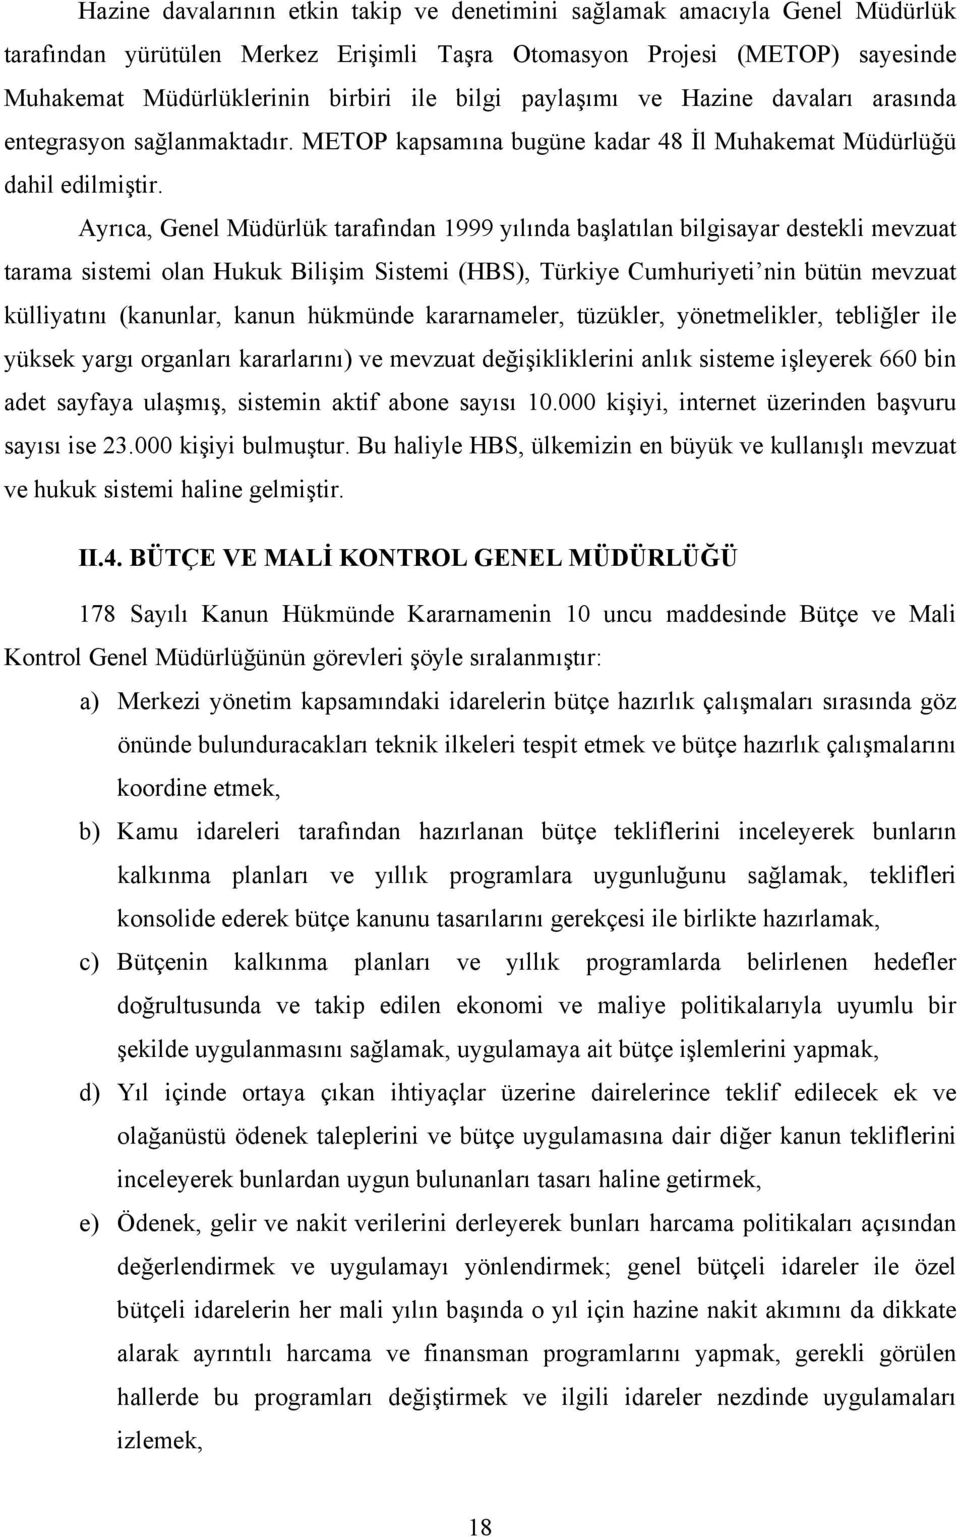 Ayrıca, Genel Müdürlük tarafından 1999 yılında başlatılan bilgisayar destekli mevzuat tarama sistemi olan Hukuk Bilişim Sistemi (HBS), Türkiye Cumhuriyeti nin bütün mevzuat külliyatını (kanunlar,